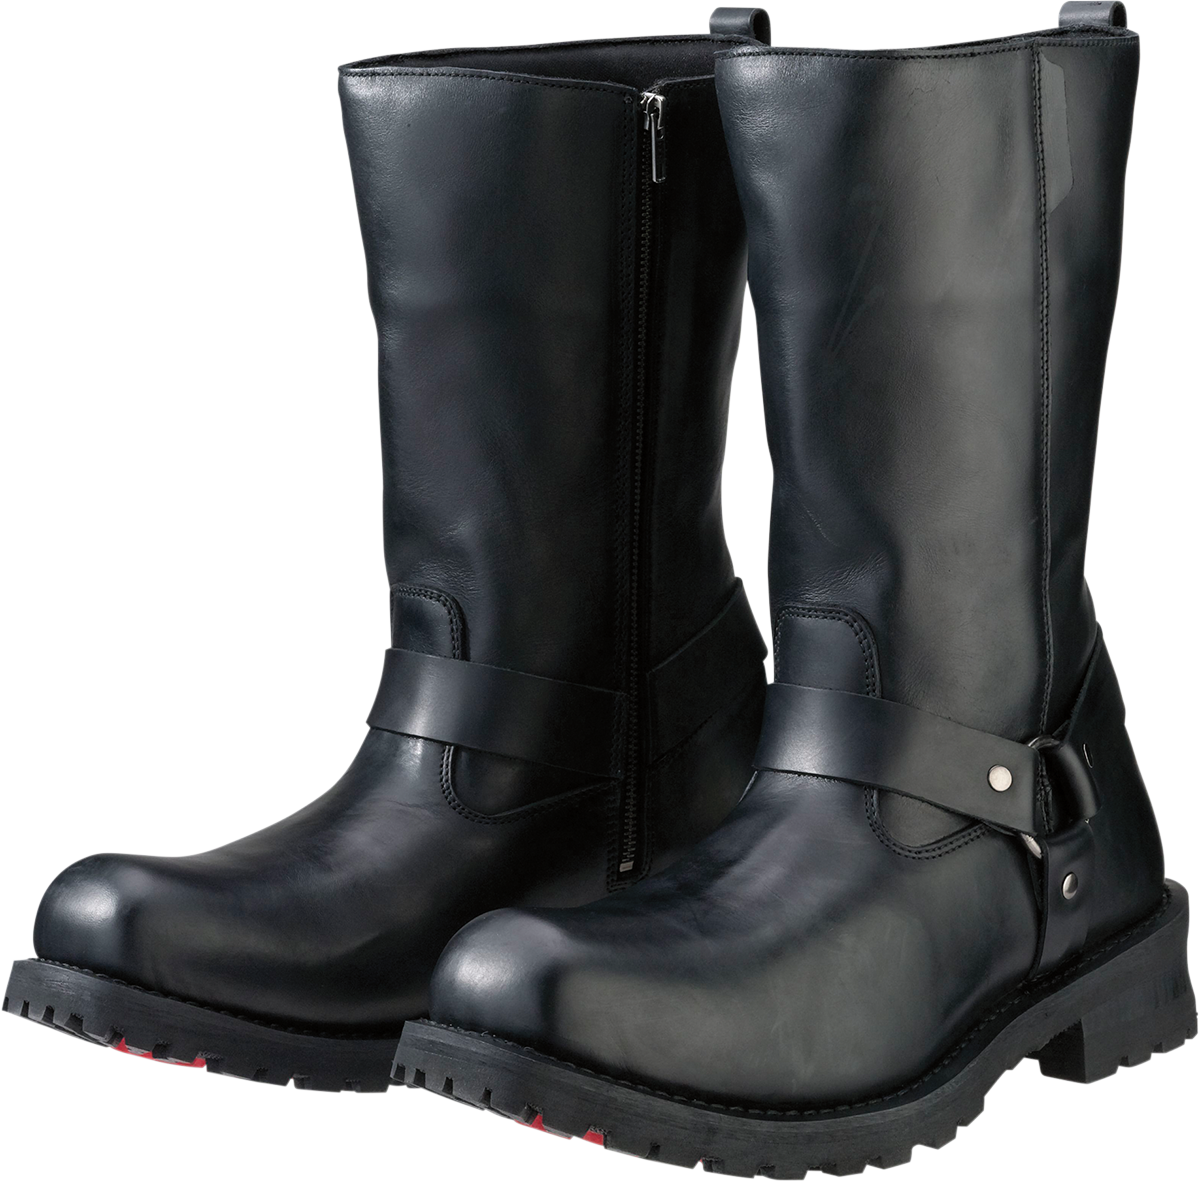 Z1R Riot Boots - Black - US 9 3403-0755